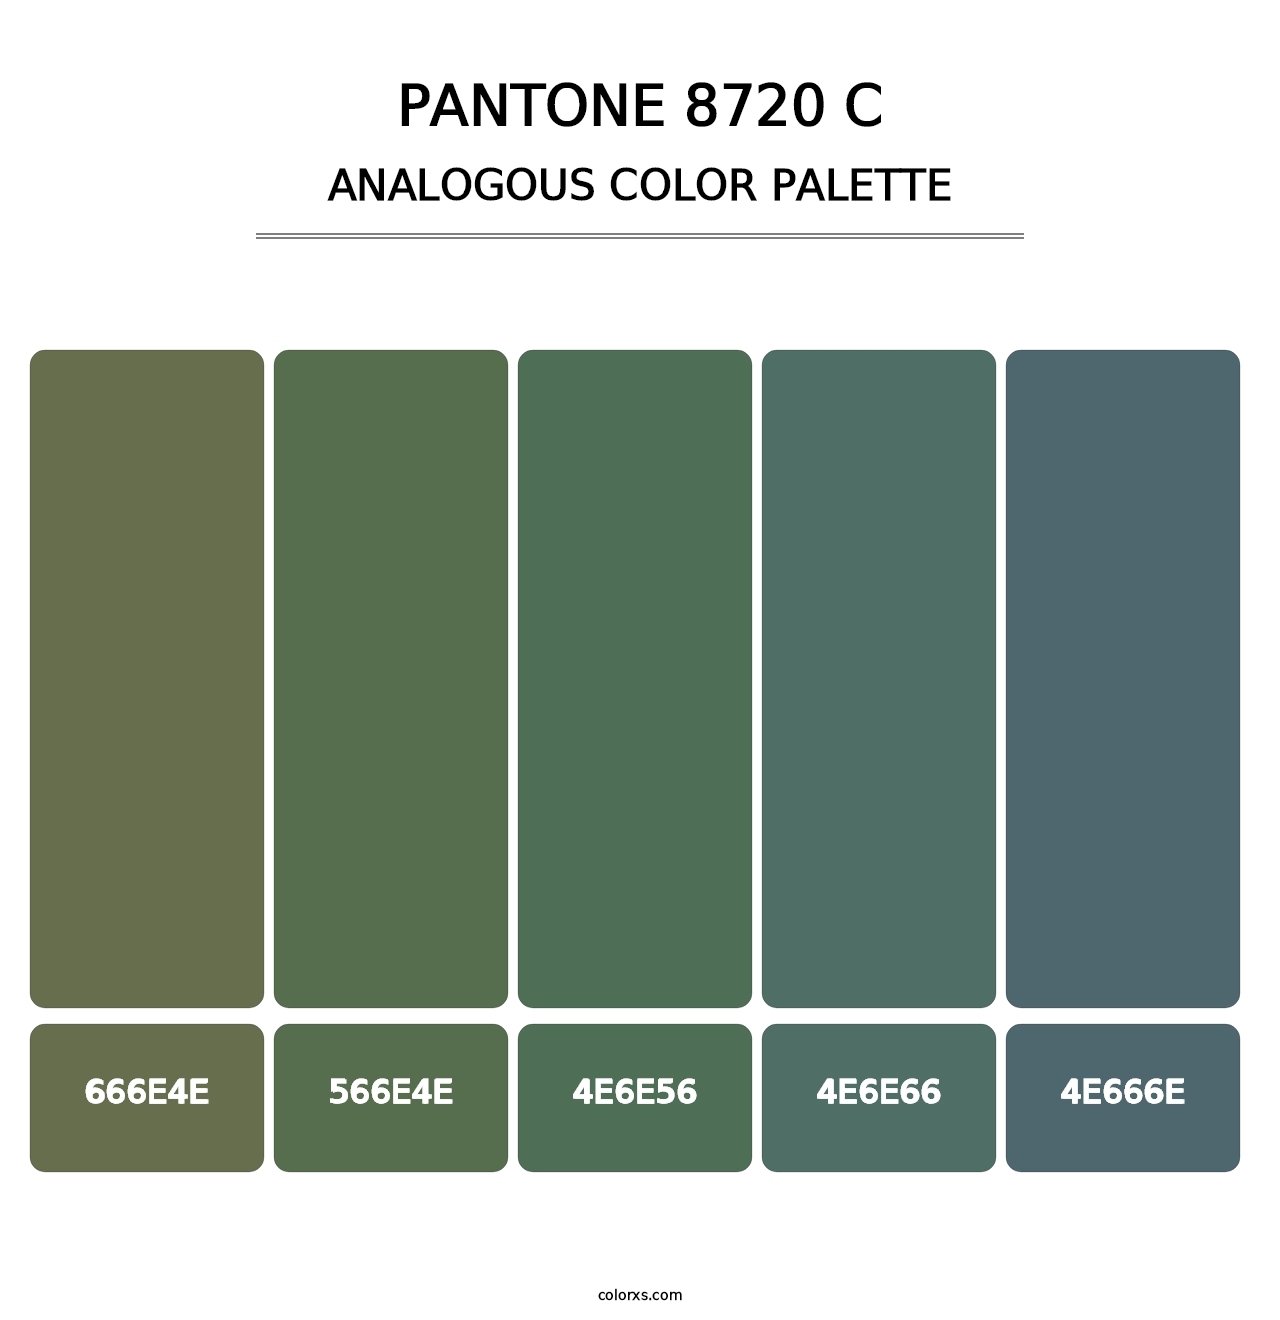 PANTONE 8720 C - Analogous Color Palette